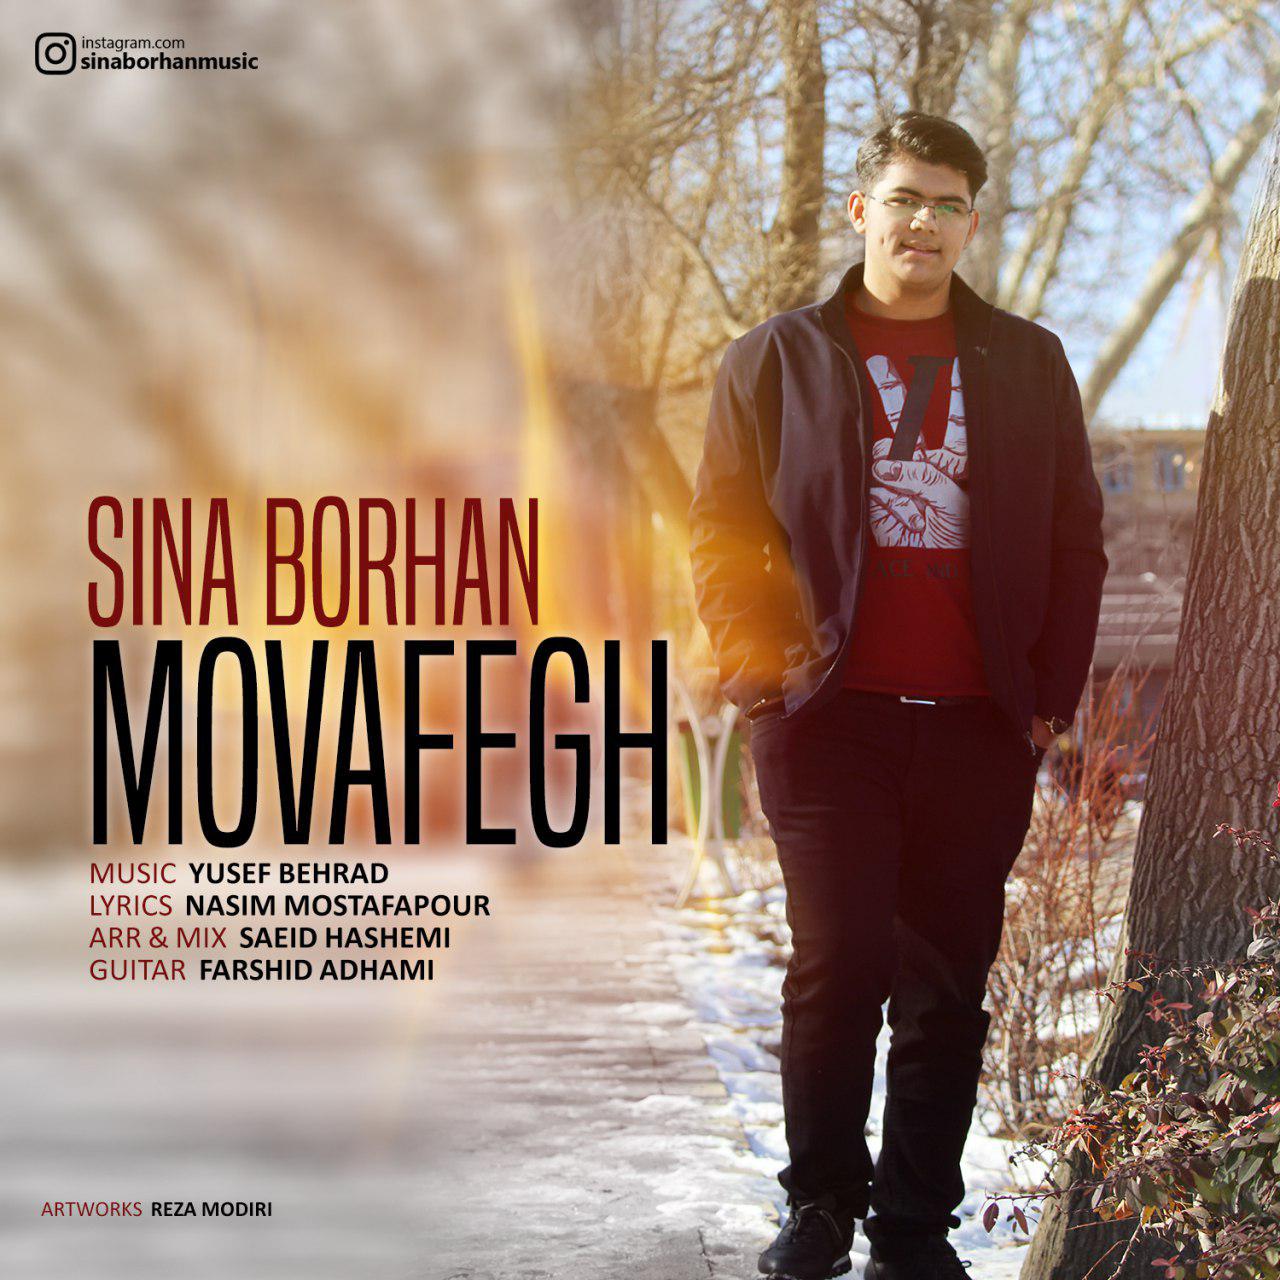  دانلود آهنگ جدید سینا برهان - موافق | Download New Music By Sina Borhan - Movafegh